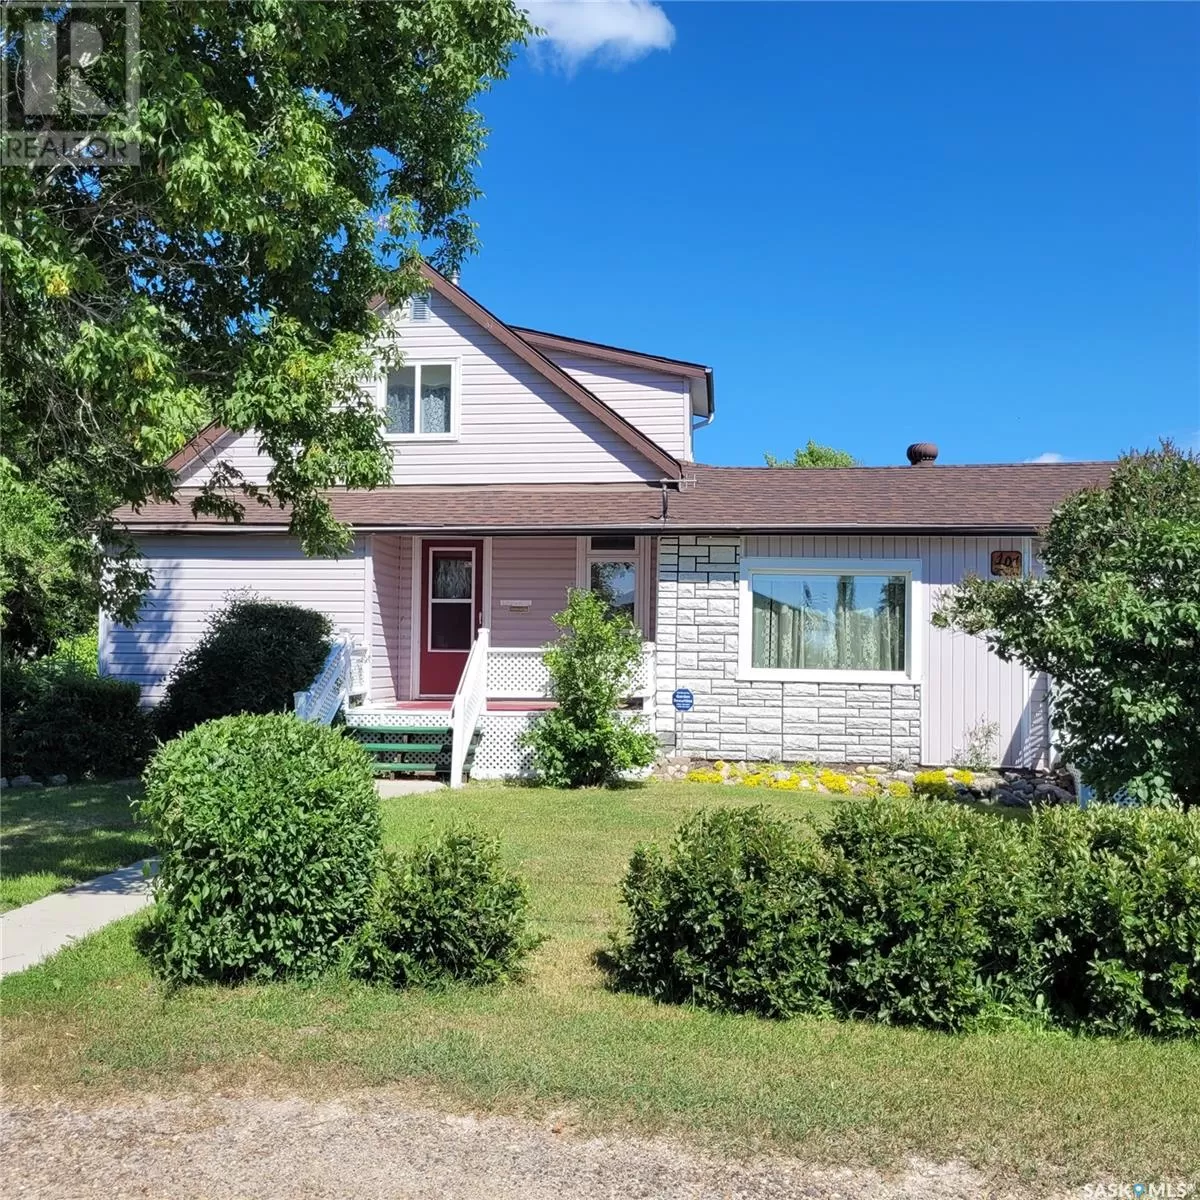 House for rent: 101 3rd Avenue S, Ebenezer, Saskatchewan S0A 0T0